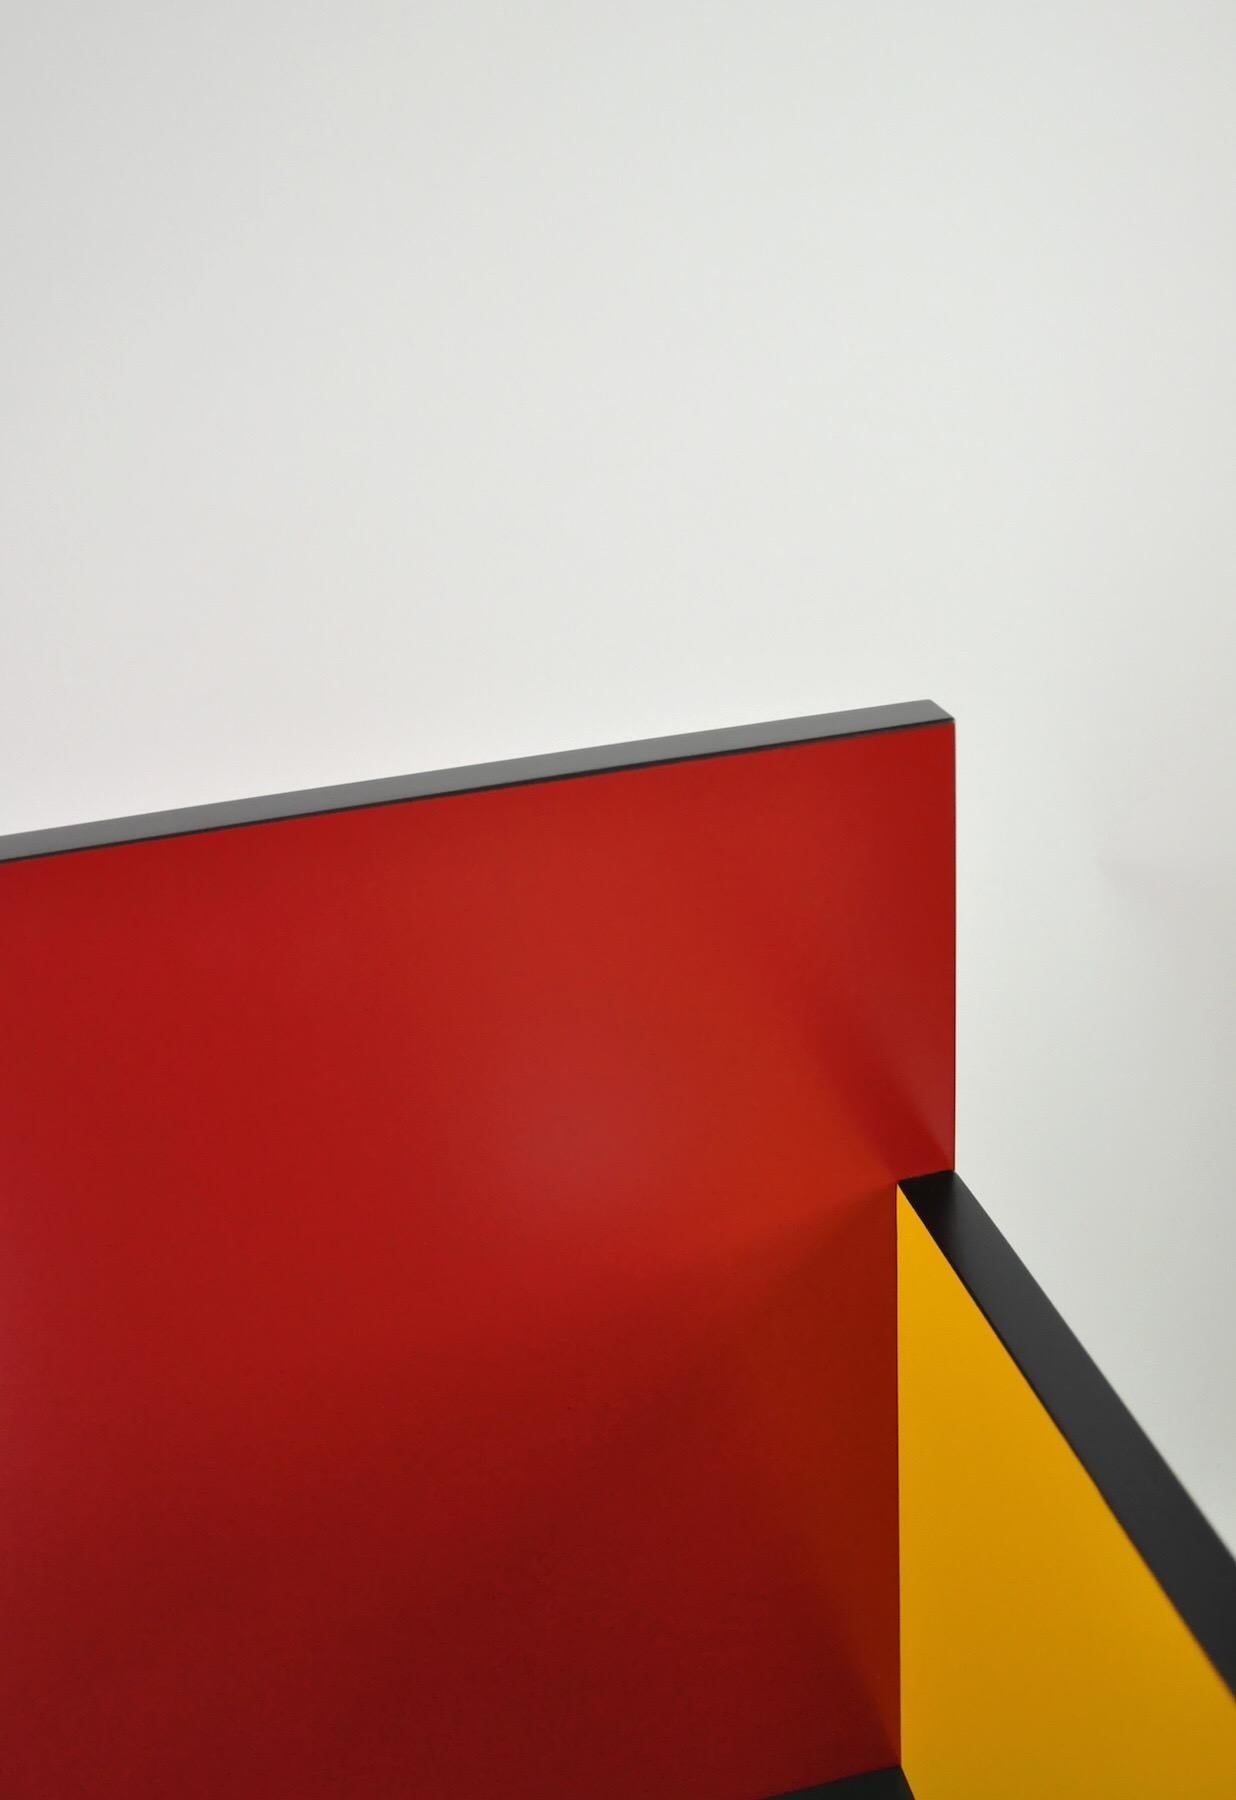 Geometrischer und minimalistischer Stuhl des russischen Designers Dmitry Samygin. Inspiriert von Gerrit Rietveld und dem Bauhaus-Stil. 

Sperrholz
Maße: 88,5 x 45 x 45 cm

Wählen Sie Ihre Farbe! 

Zwei Versionen:
- Ein Arm (rechts oder